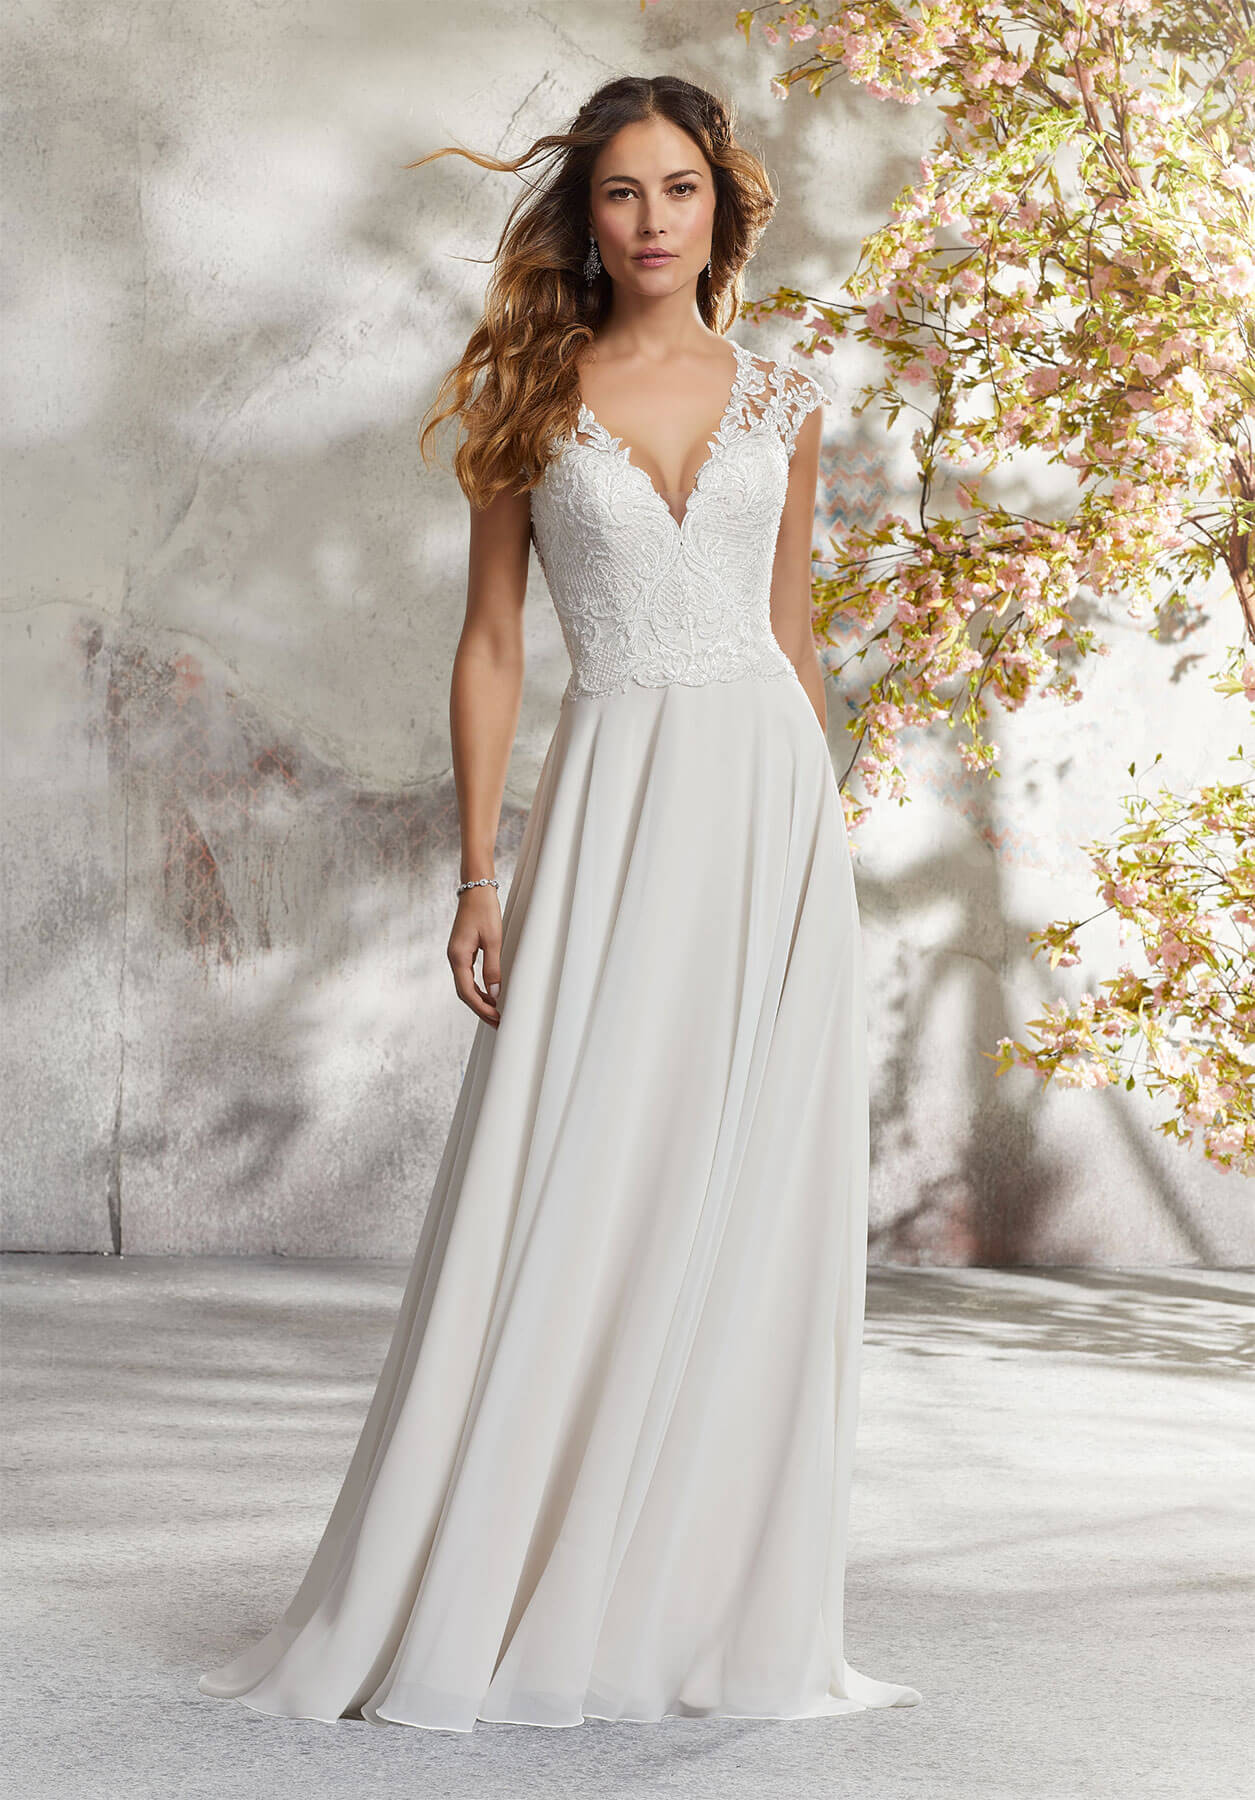 Скромное свадебное платье: простота и элегантность